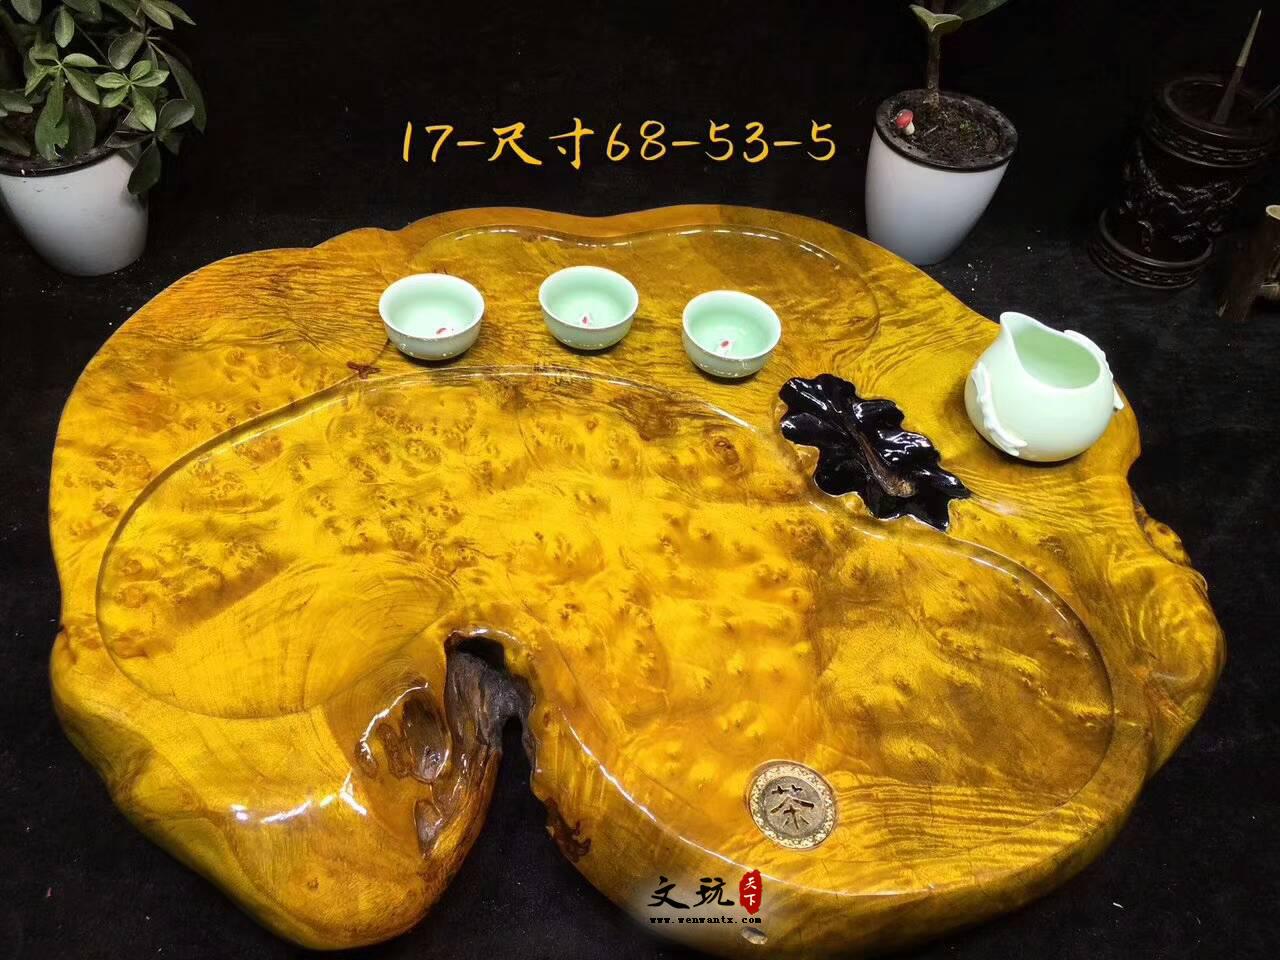 黄金樟茶桌带瘤疤 板面干净颜色金黄纹理清晰提升格调-5